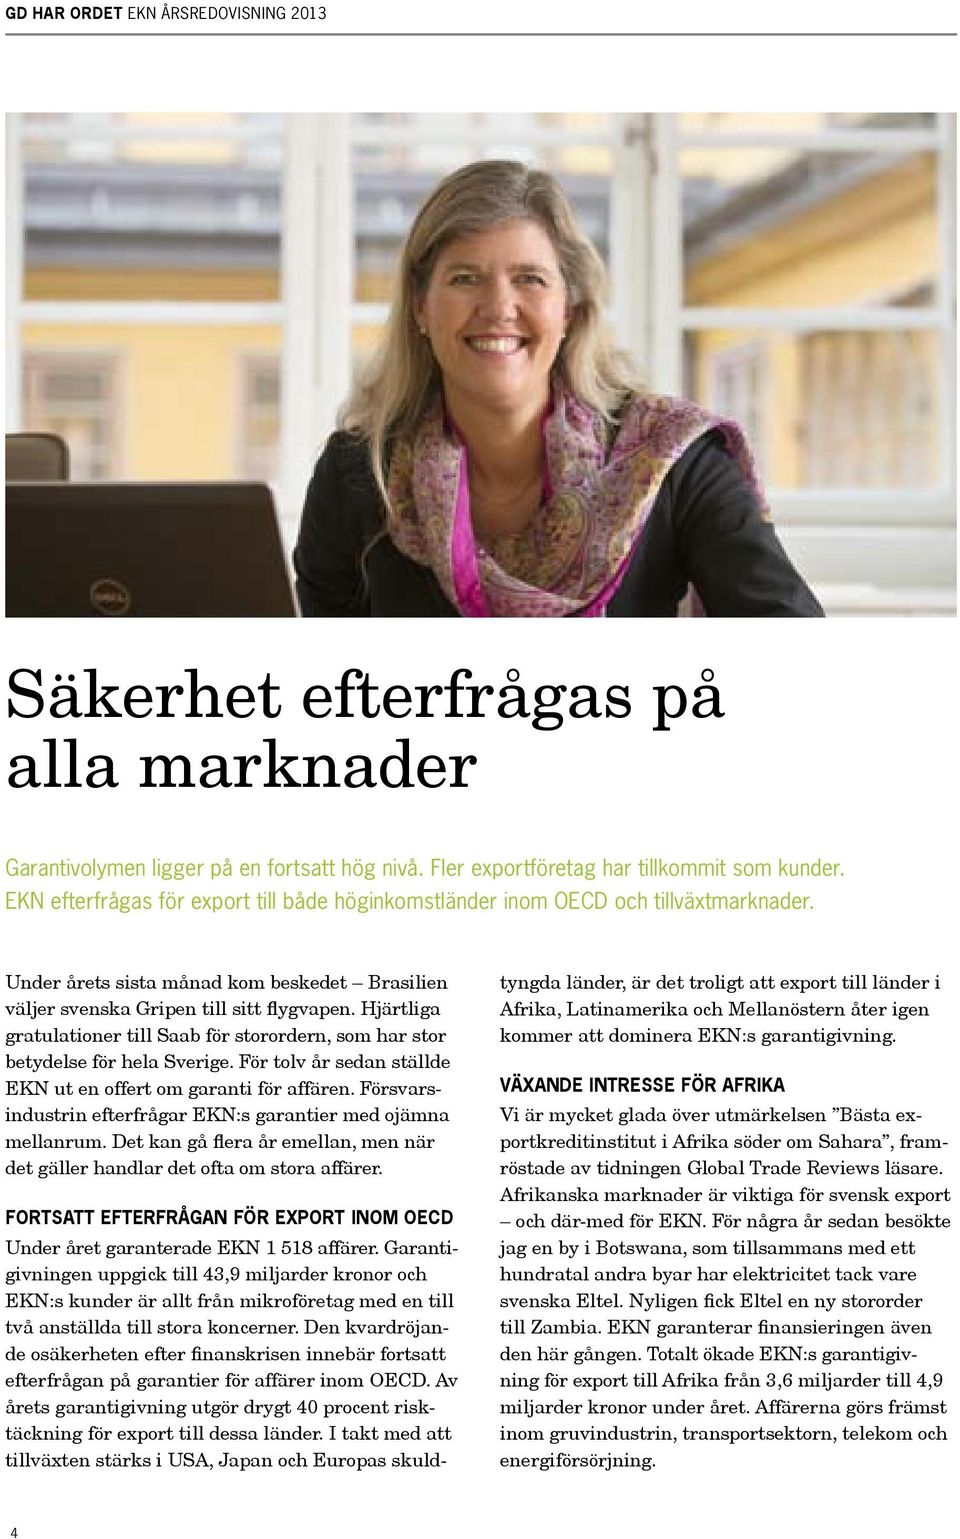 Hjärtliga gratulationer till Saab för storordern, som har stor betydelse för hela Sverige. För tolv år sedan ställde EKN ut en offert om garanti för affären.